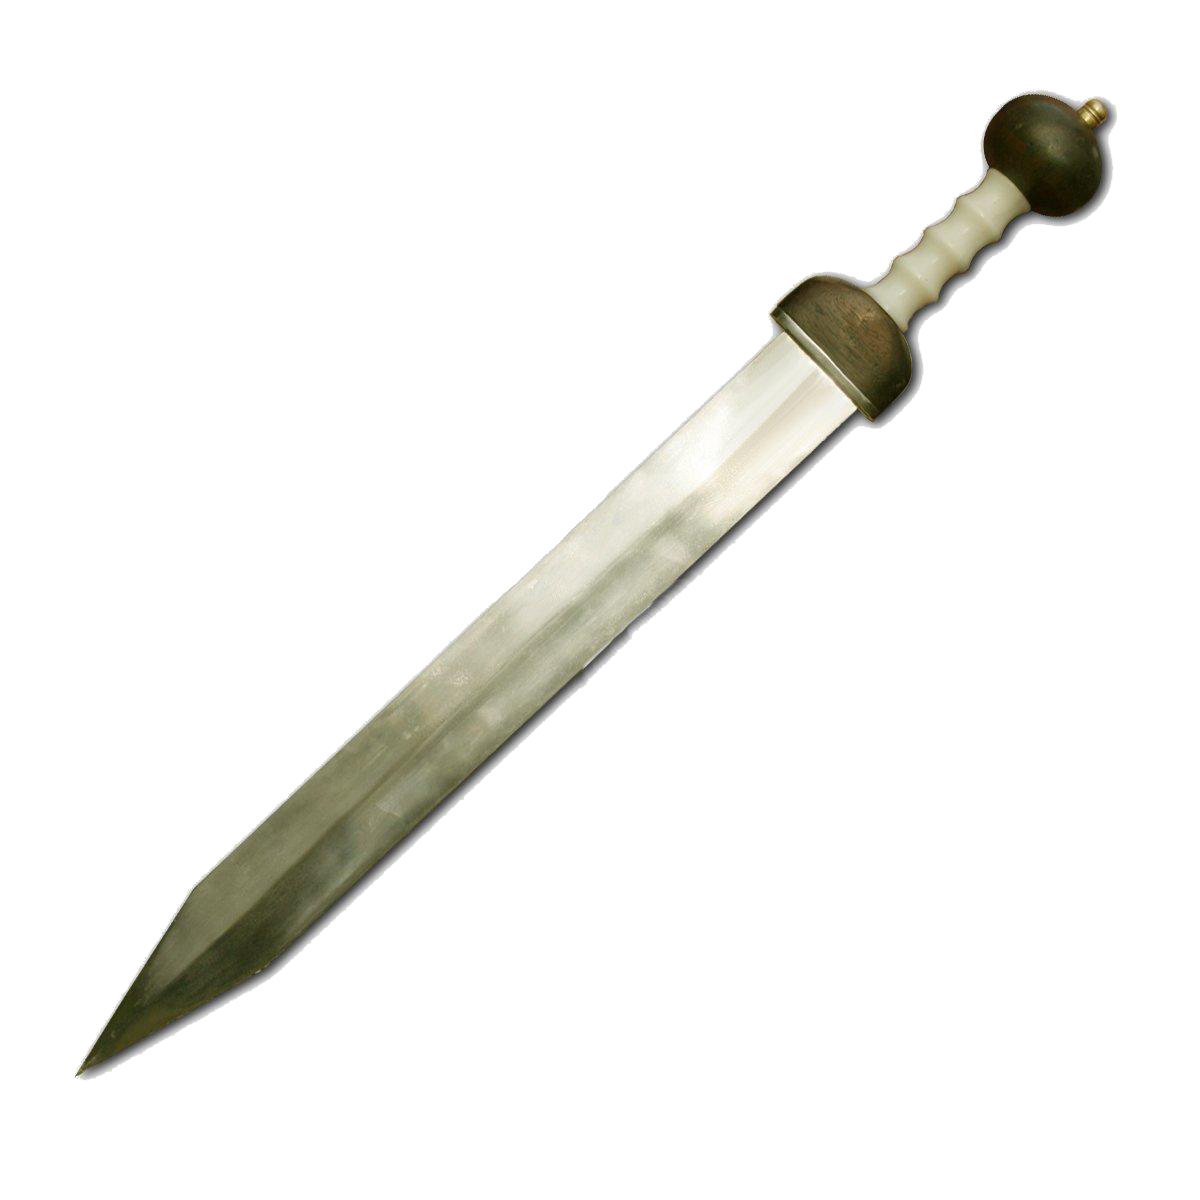 Gladiator Sword Transparent Image PNG Image